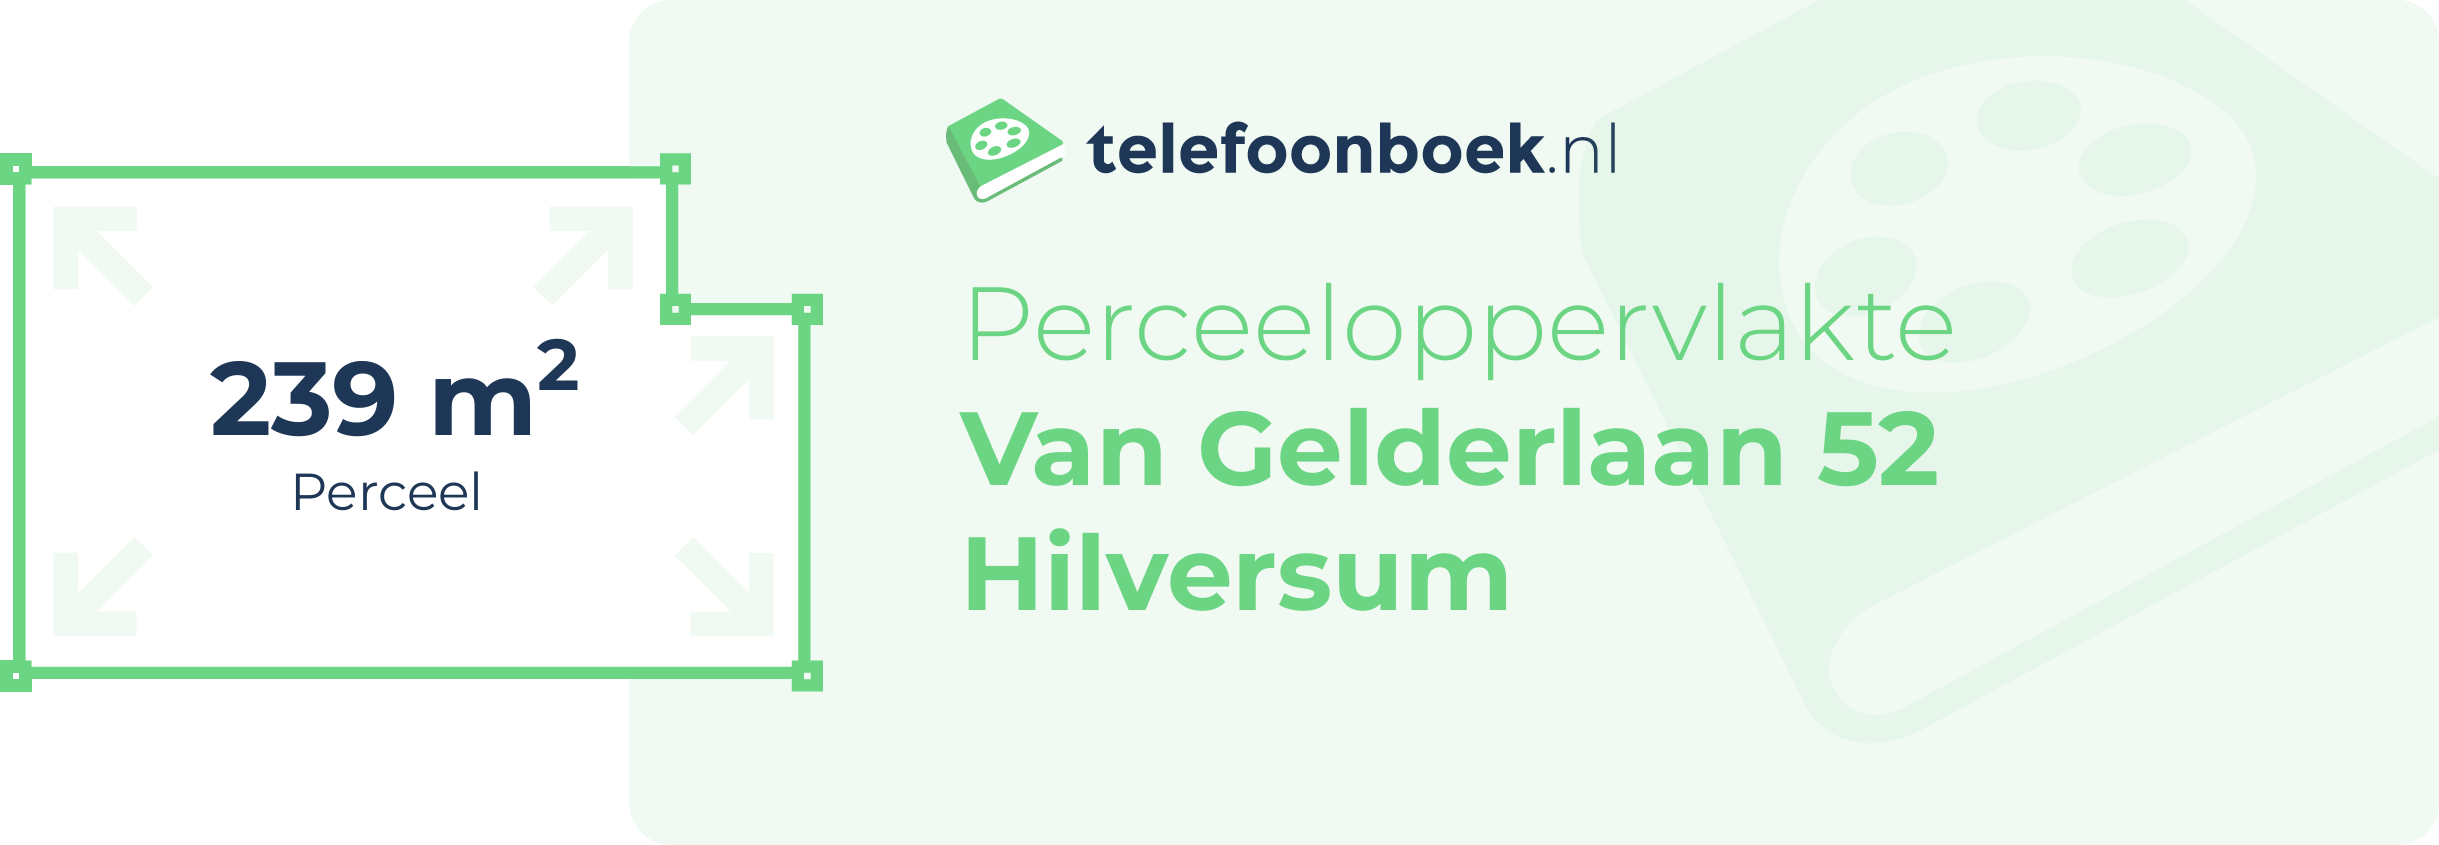 Perceeloppervlakte Van Gelderlaan 52 Hilversum